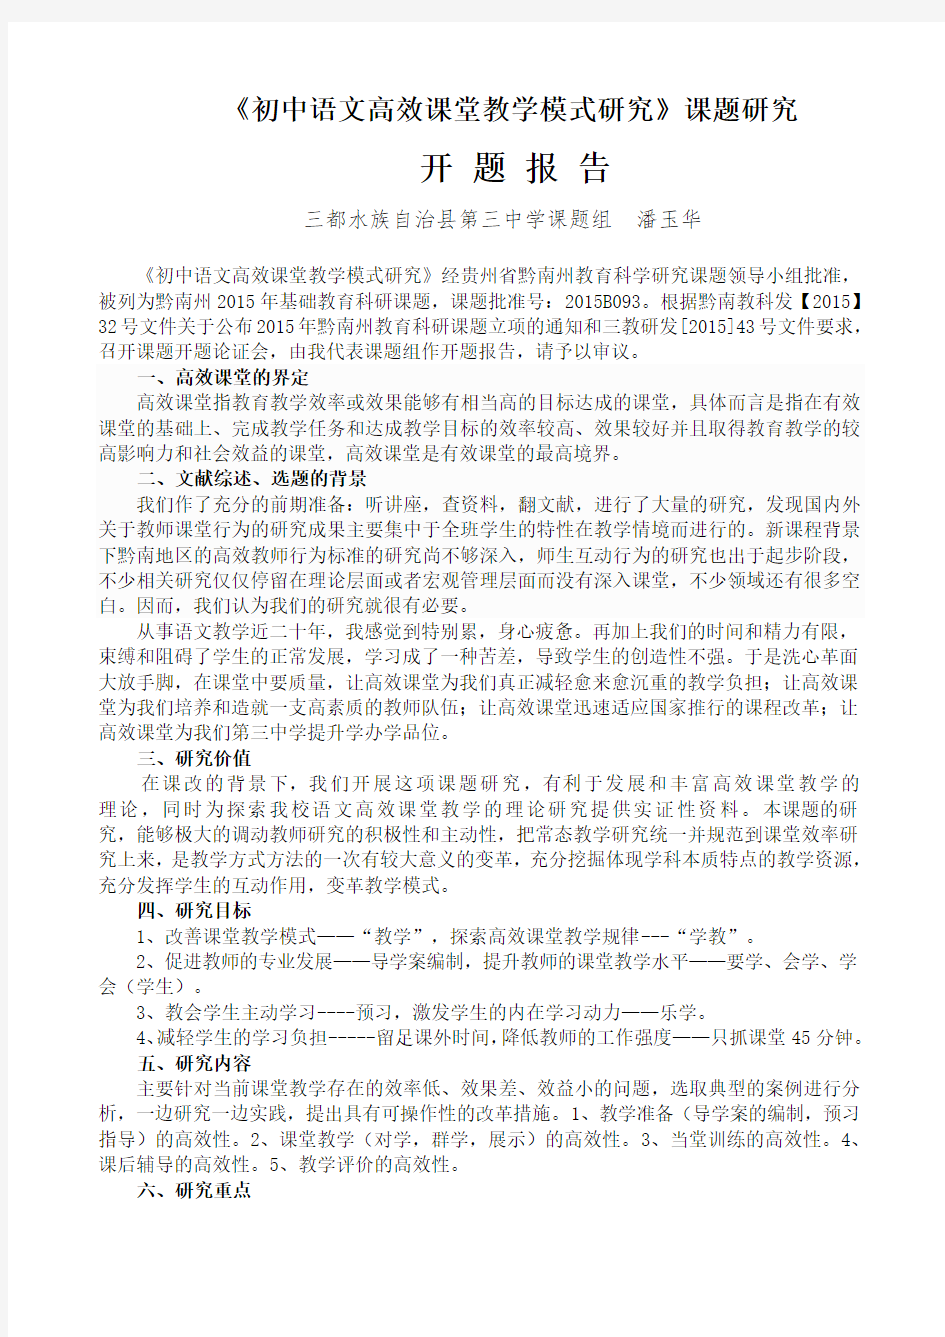 《初中语文高效课堂教学模式研究》开题报告